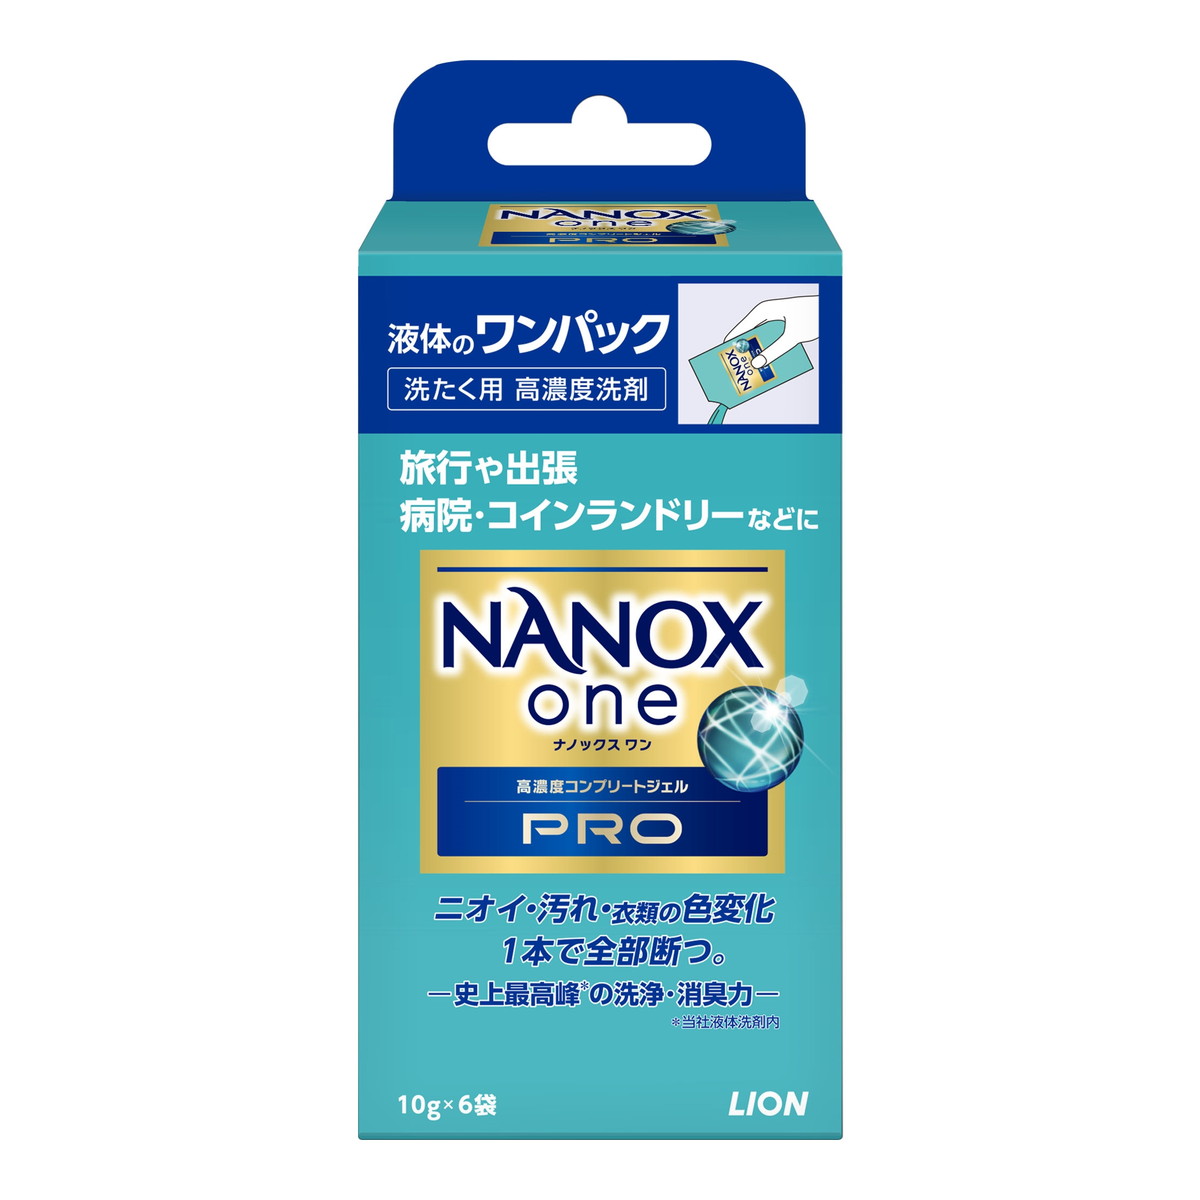 【令和 早い者勝ちセール】ライオン NANOX one ナノックス ワン PRO ワンパック 10g×6袋入 洗たく用 高濃度洗剤